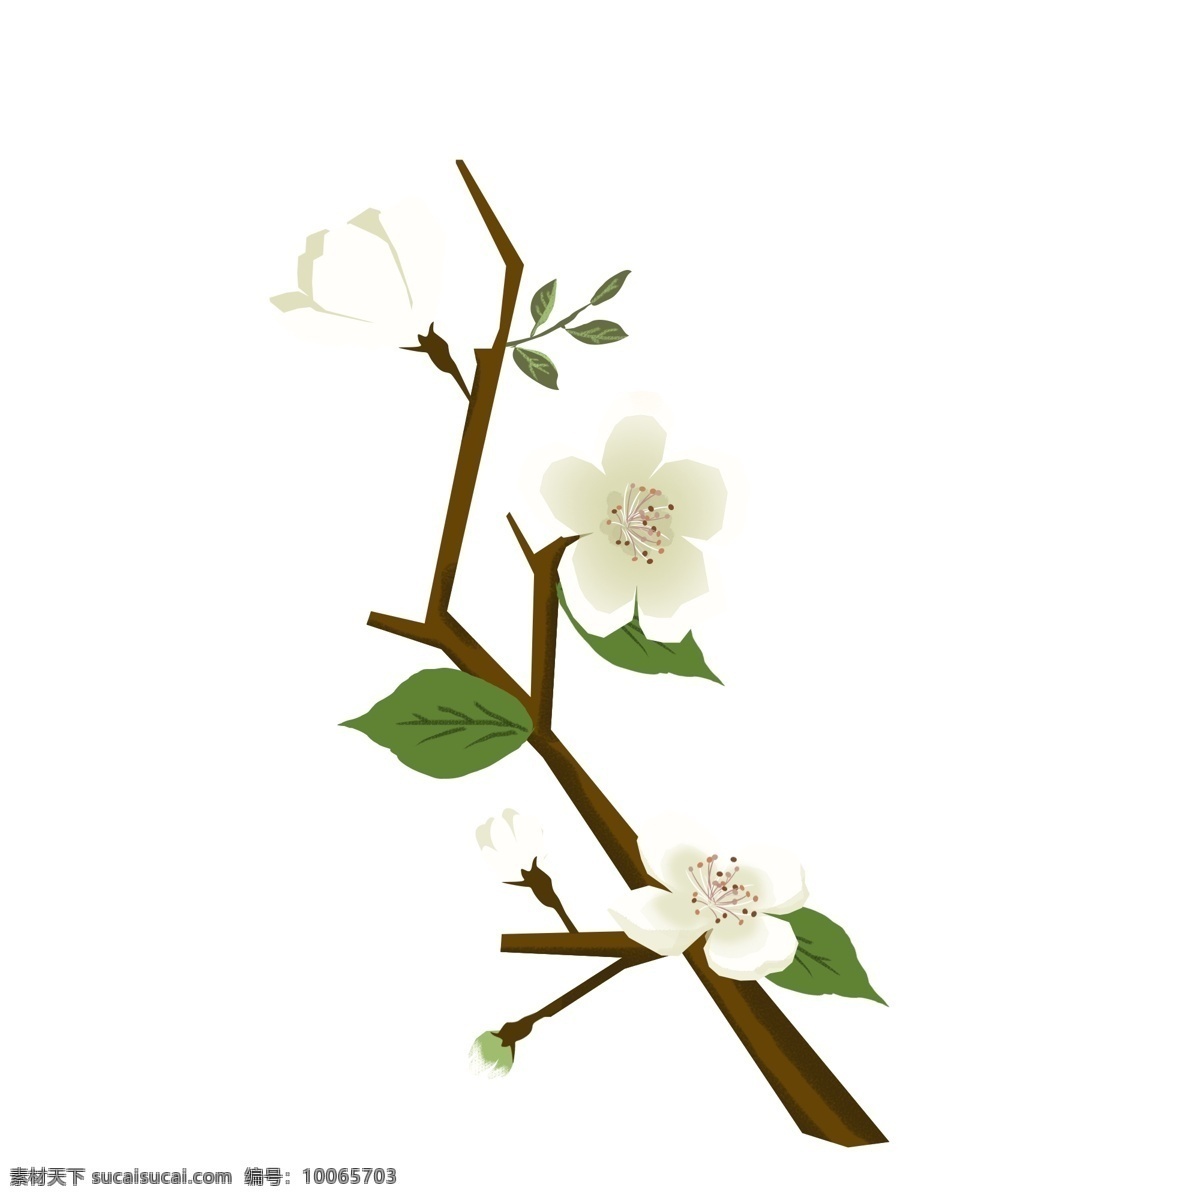 春天 元素 梨花 白色 花朵 花枝 花卉 手绘 简约 风 白色花朵 手绘花朵